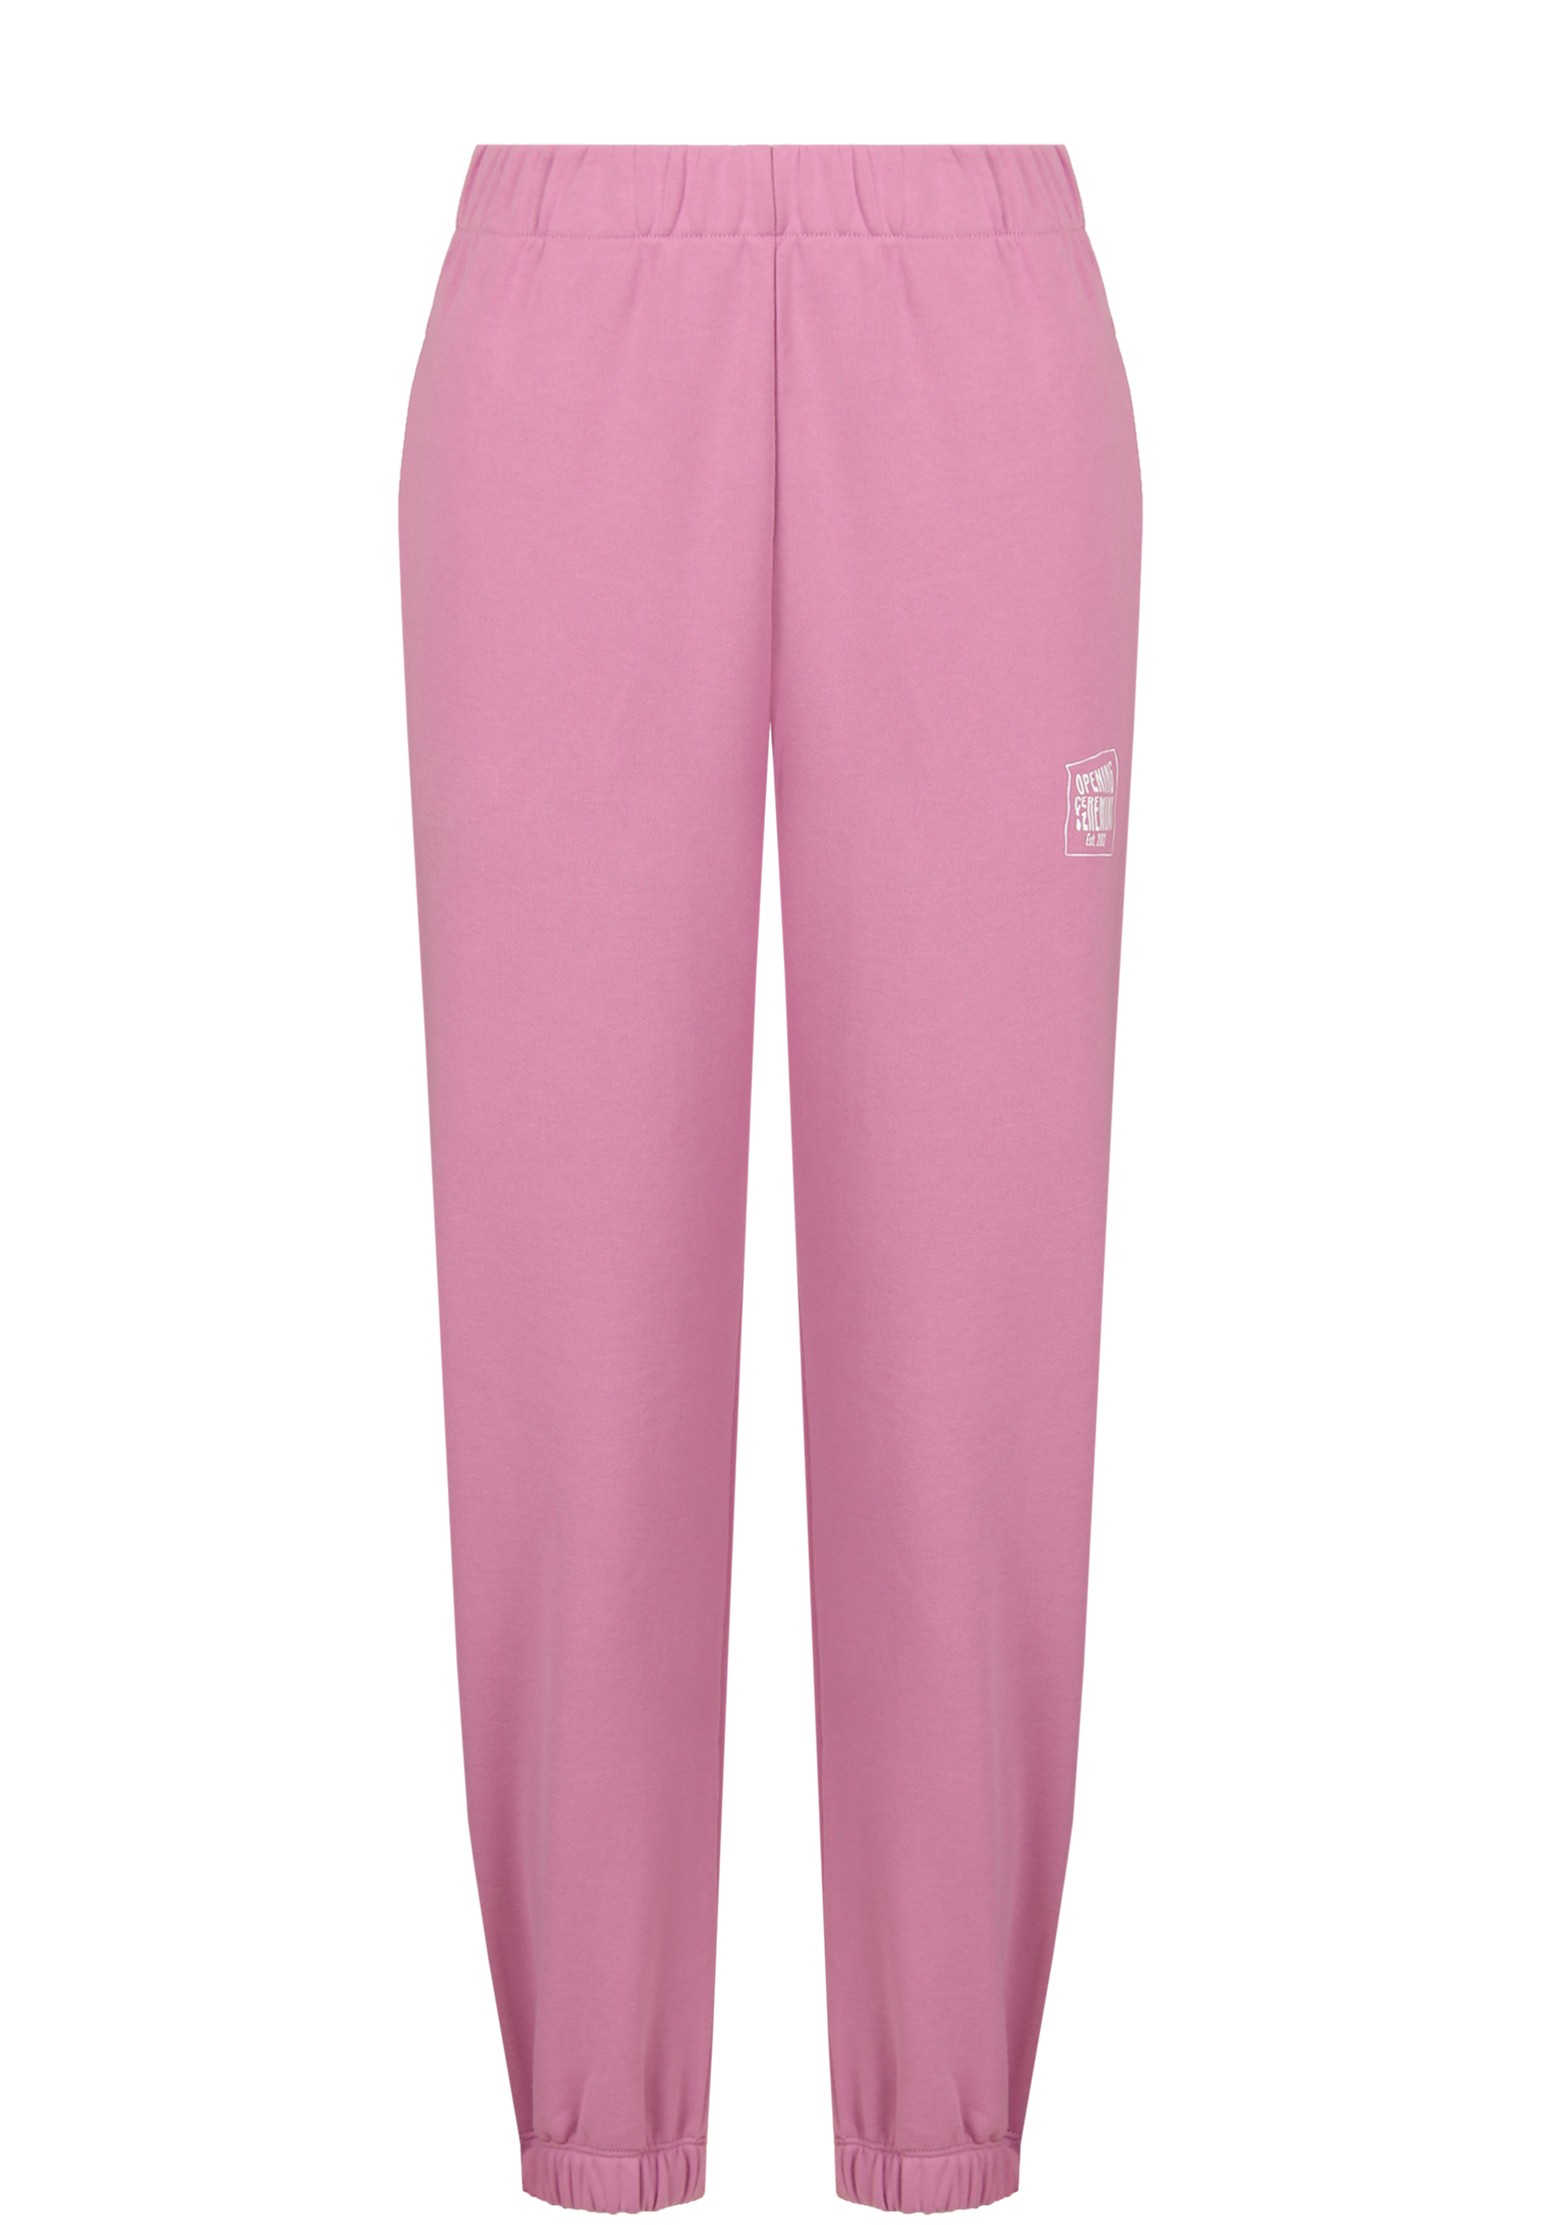 Спортивные брюки женские 128658 розовые S OPENING CEREMONY. Цвет: розовый